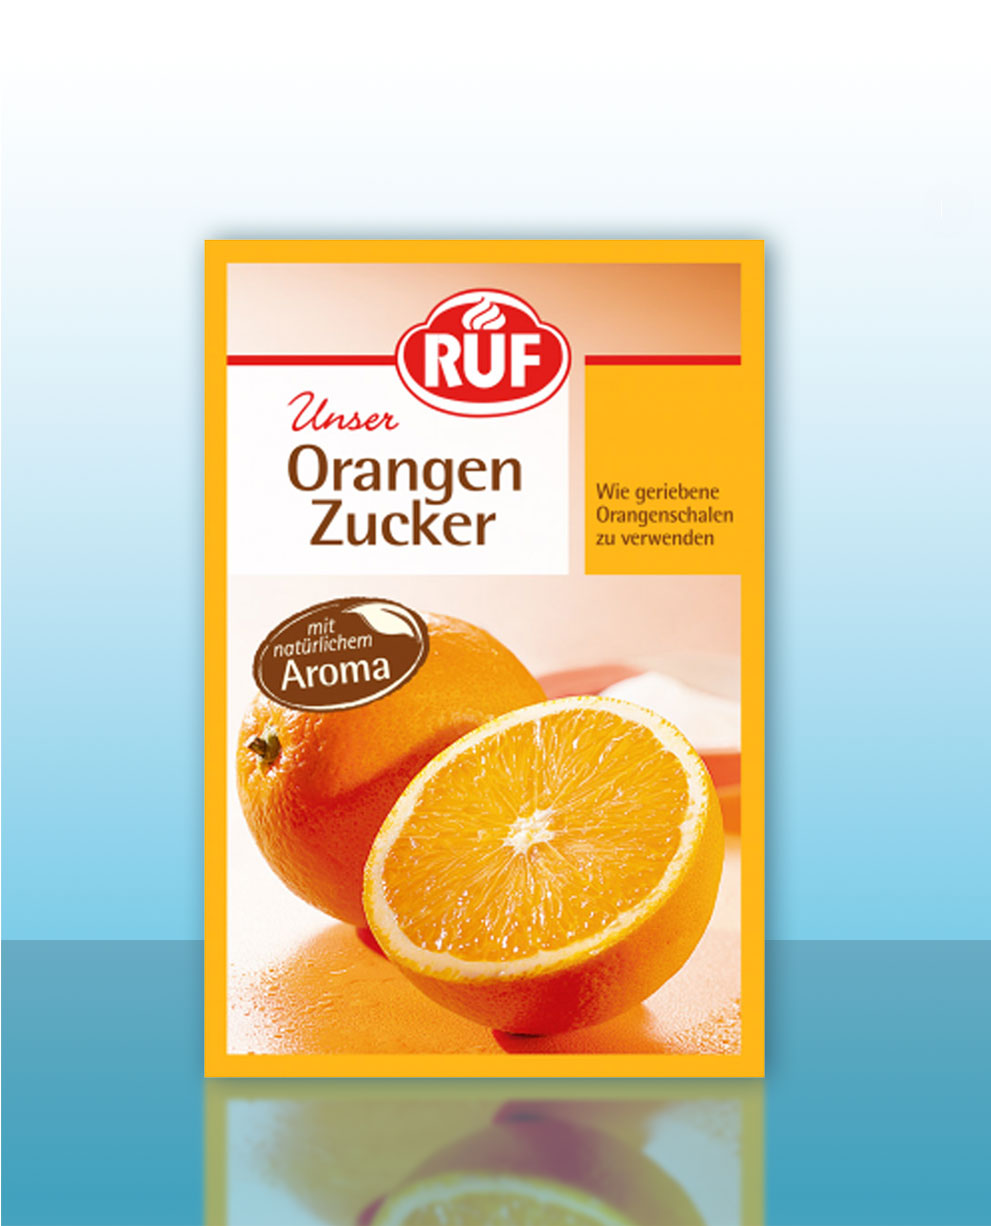 sinaasappelsuiker-01-baking-soda-nl